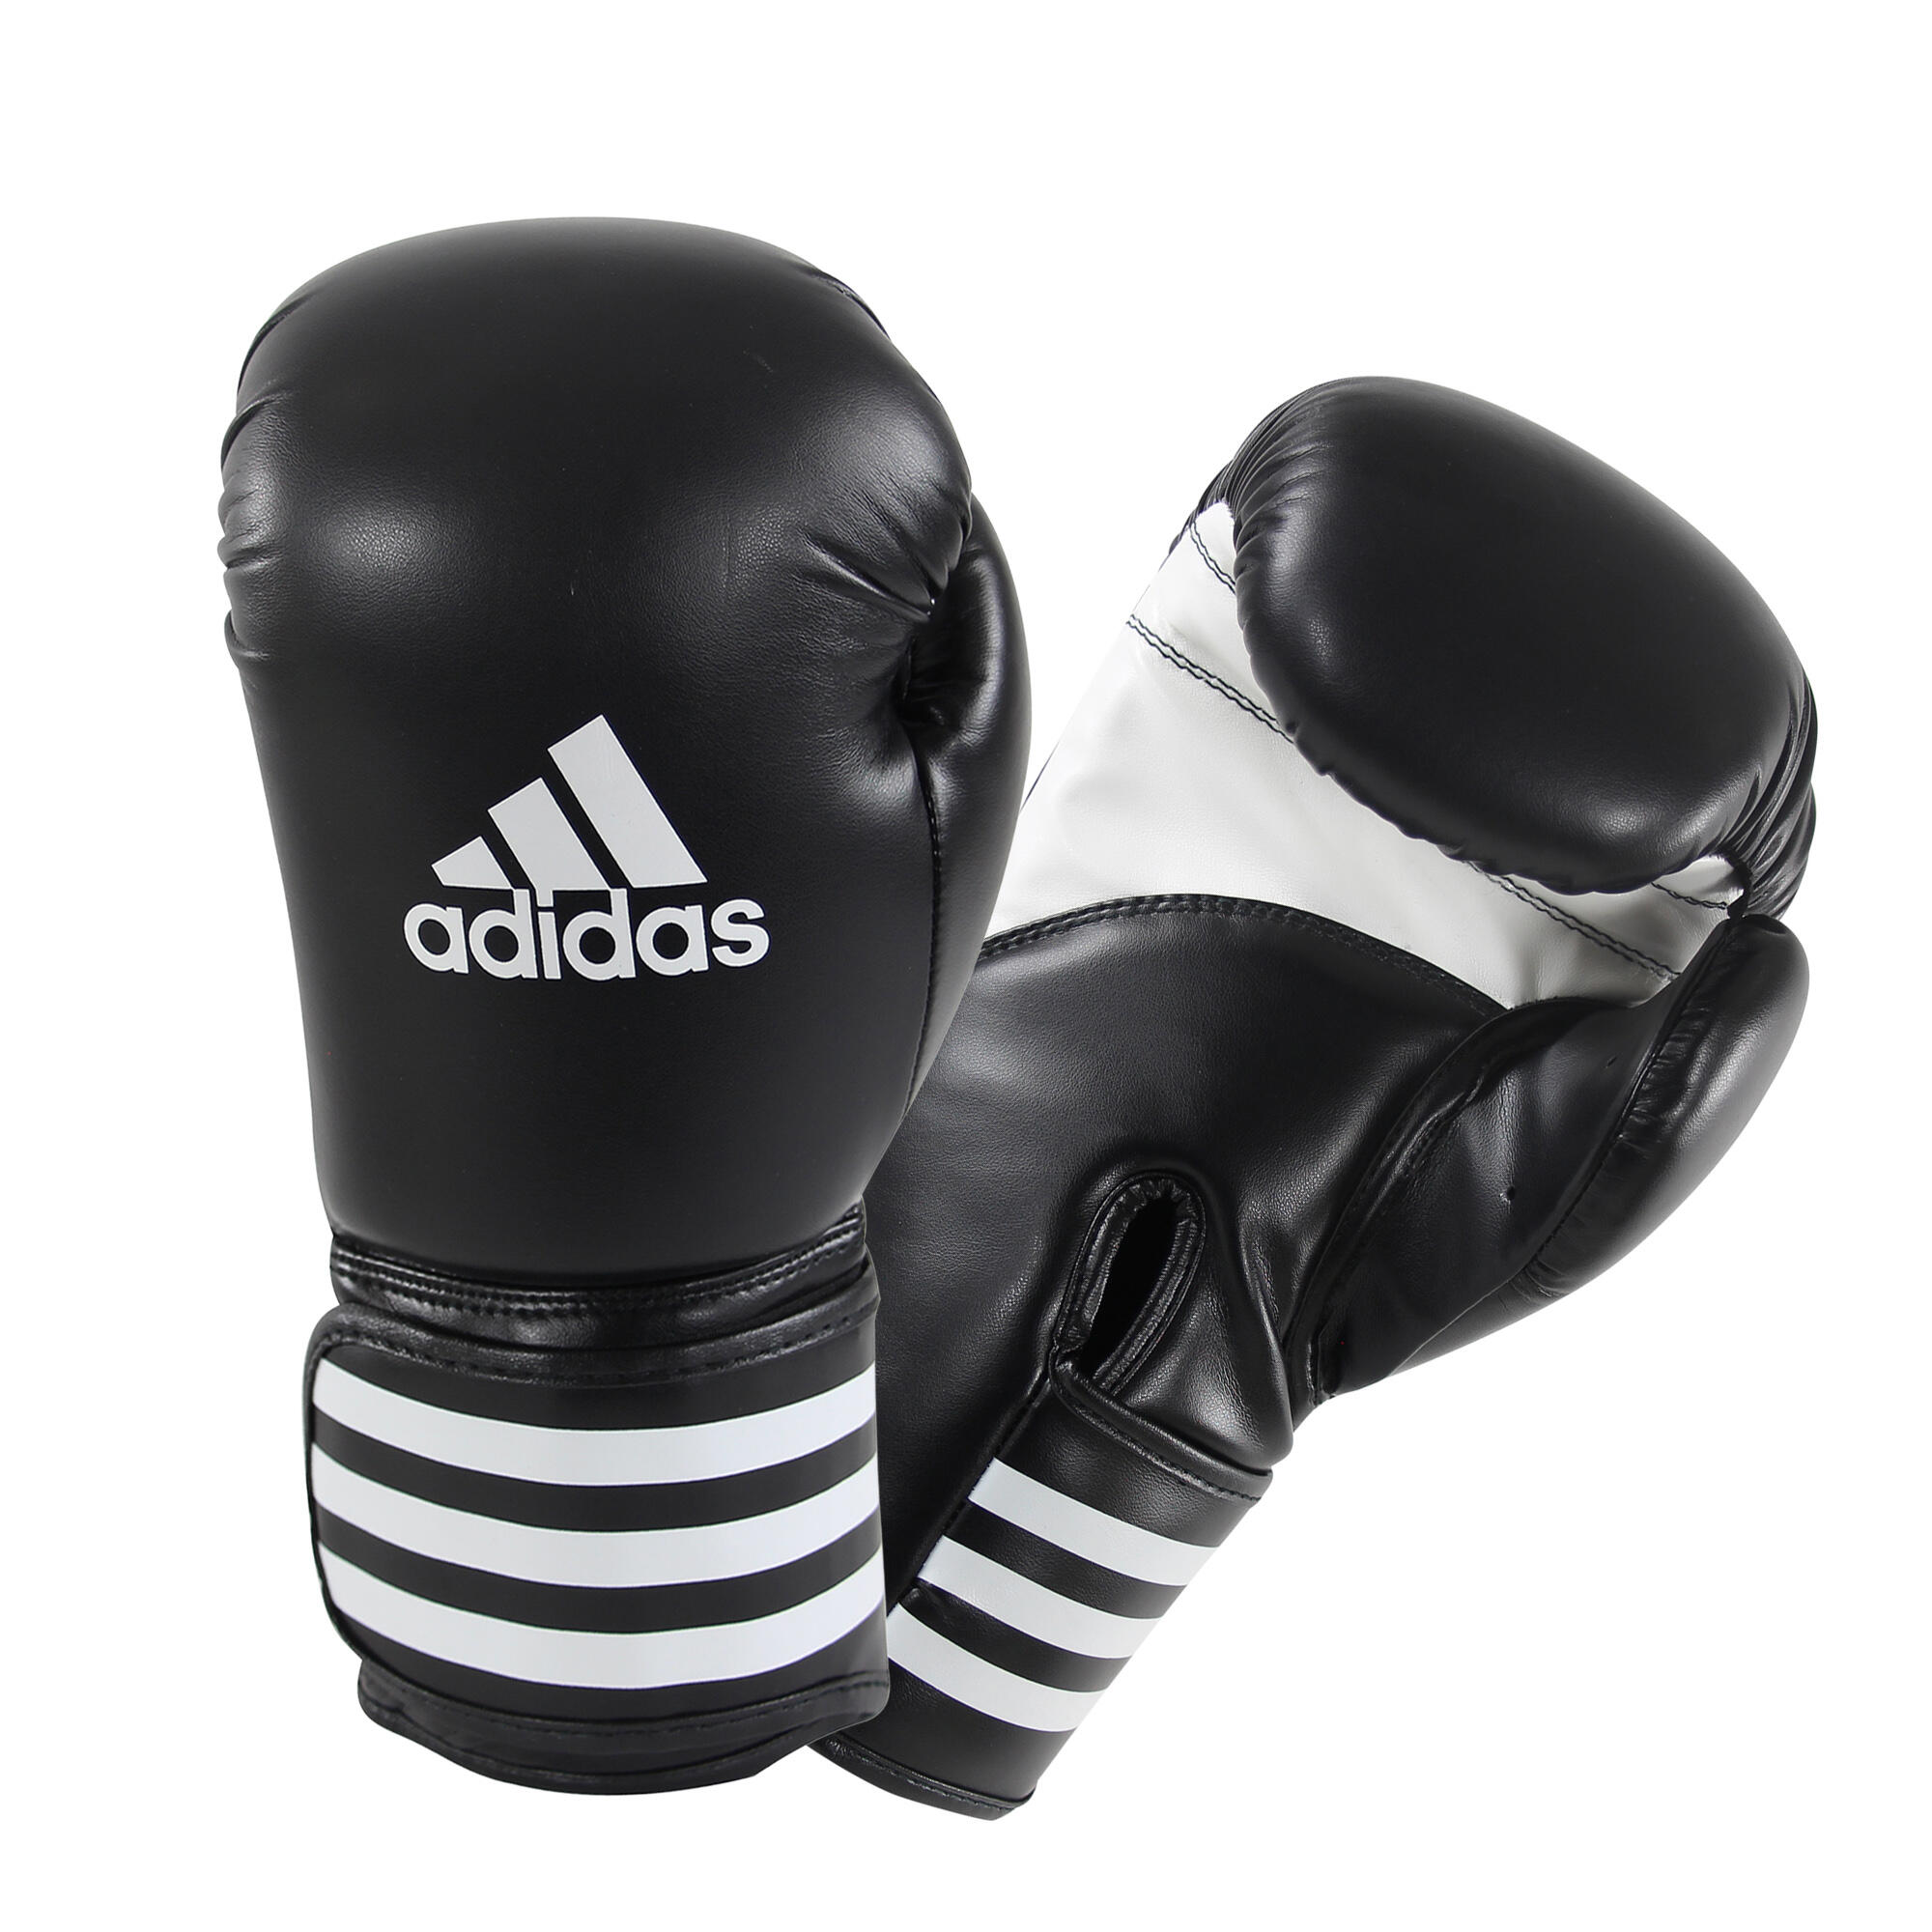 gants de boxe adidas